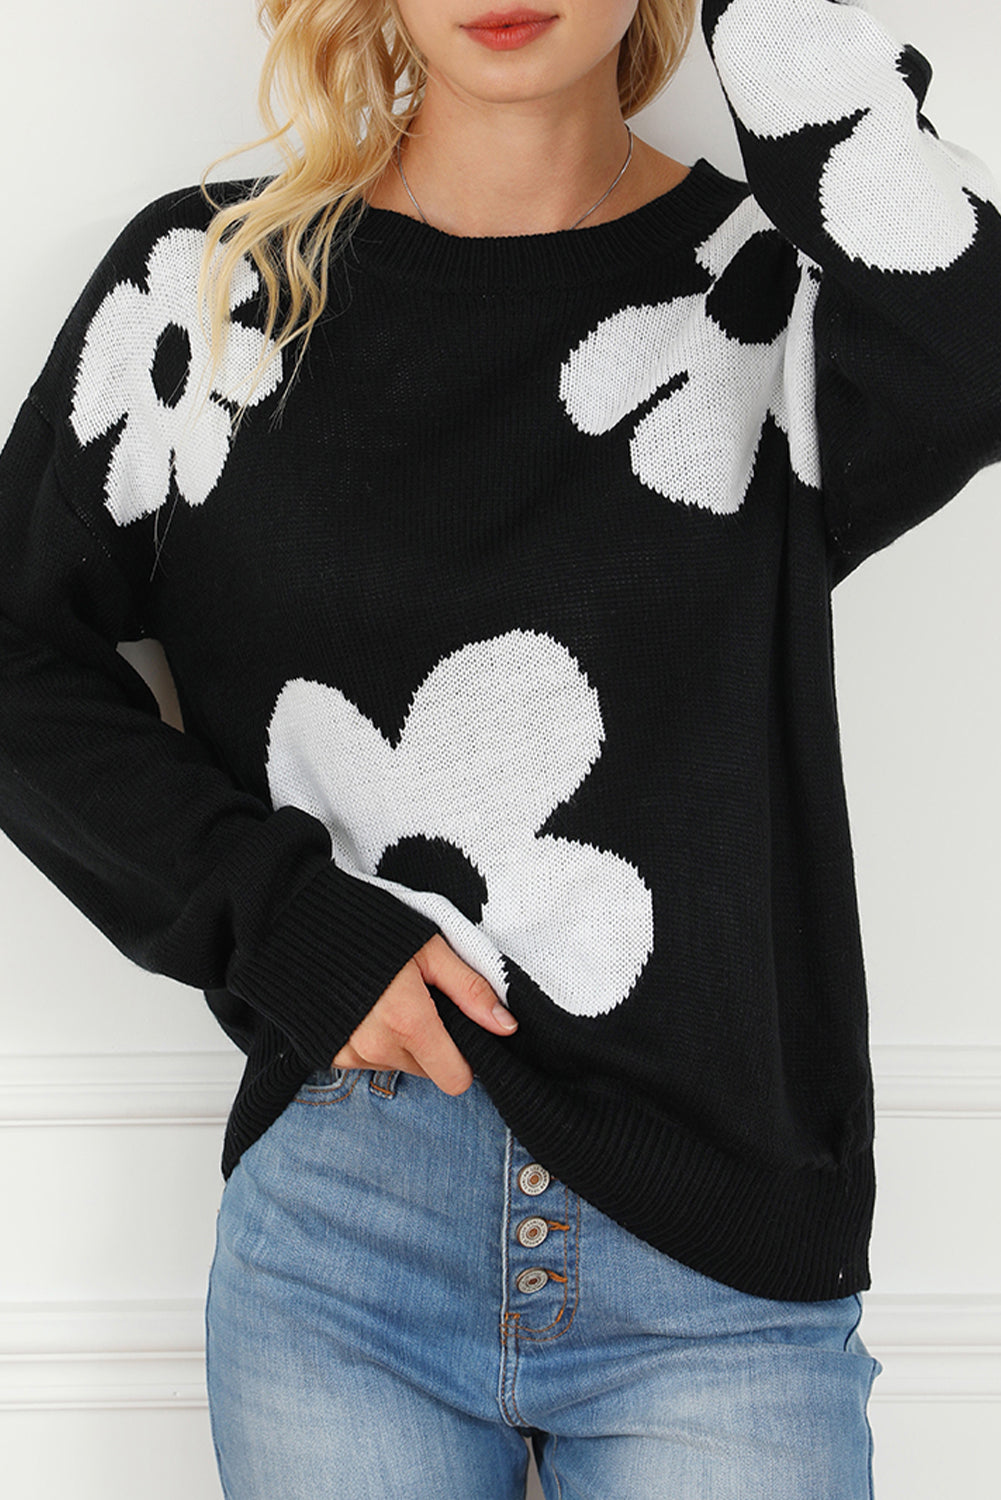 Big Flower Pattern Knit Sweater